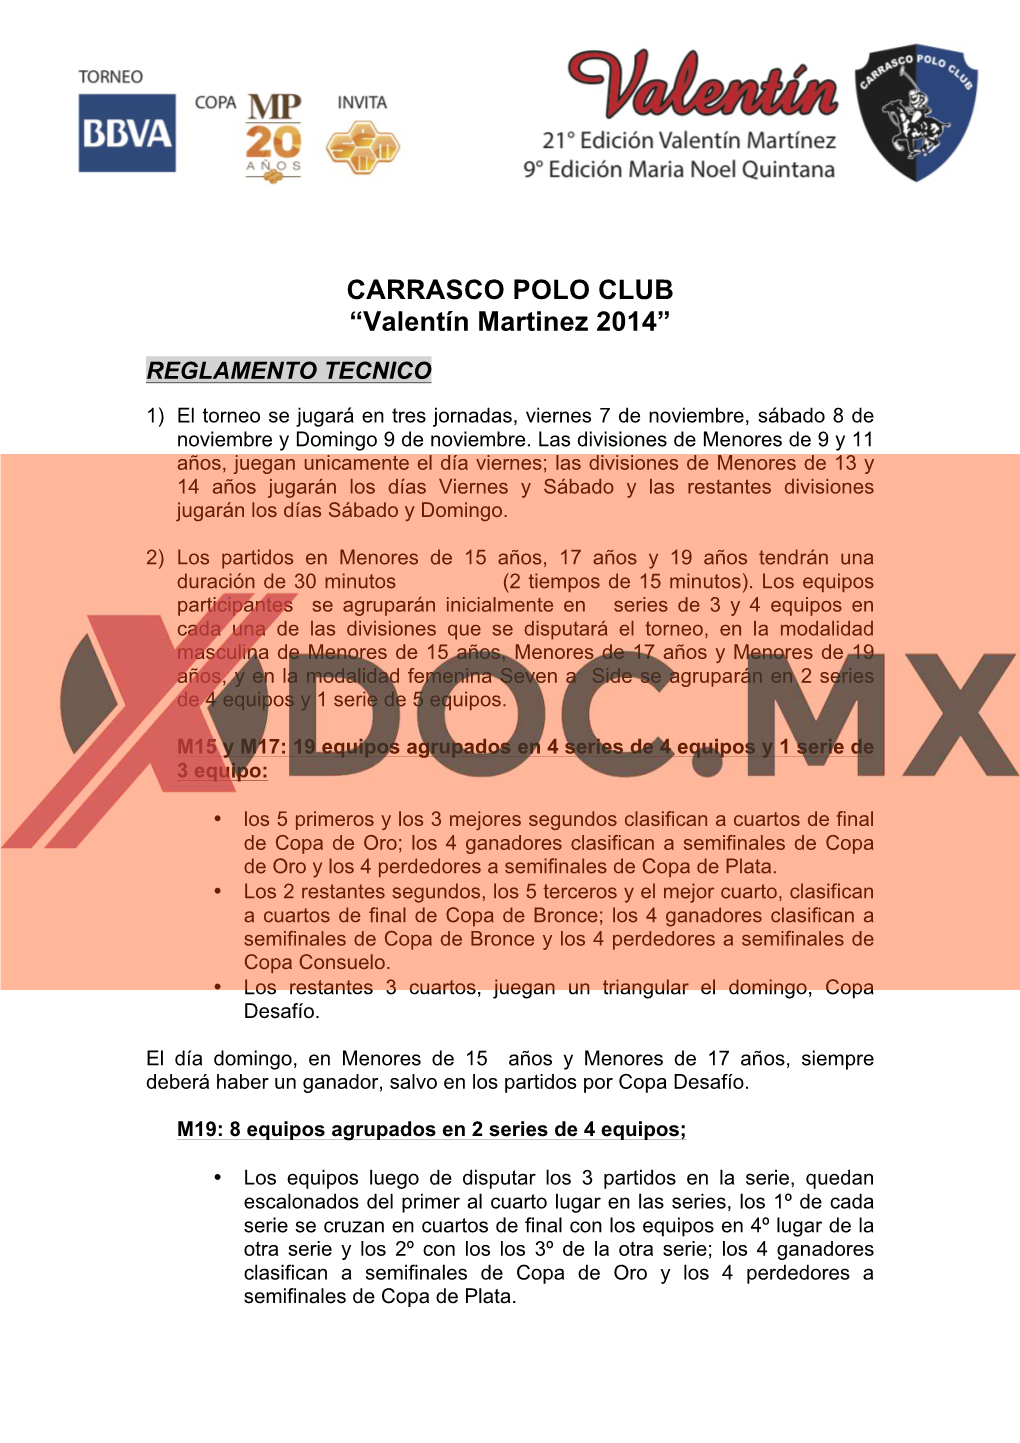 CARRASCO POLO CLUB “Valentín Martinez 2014”